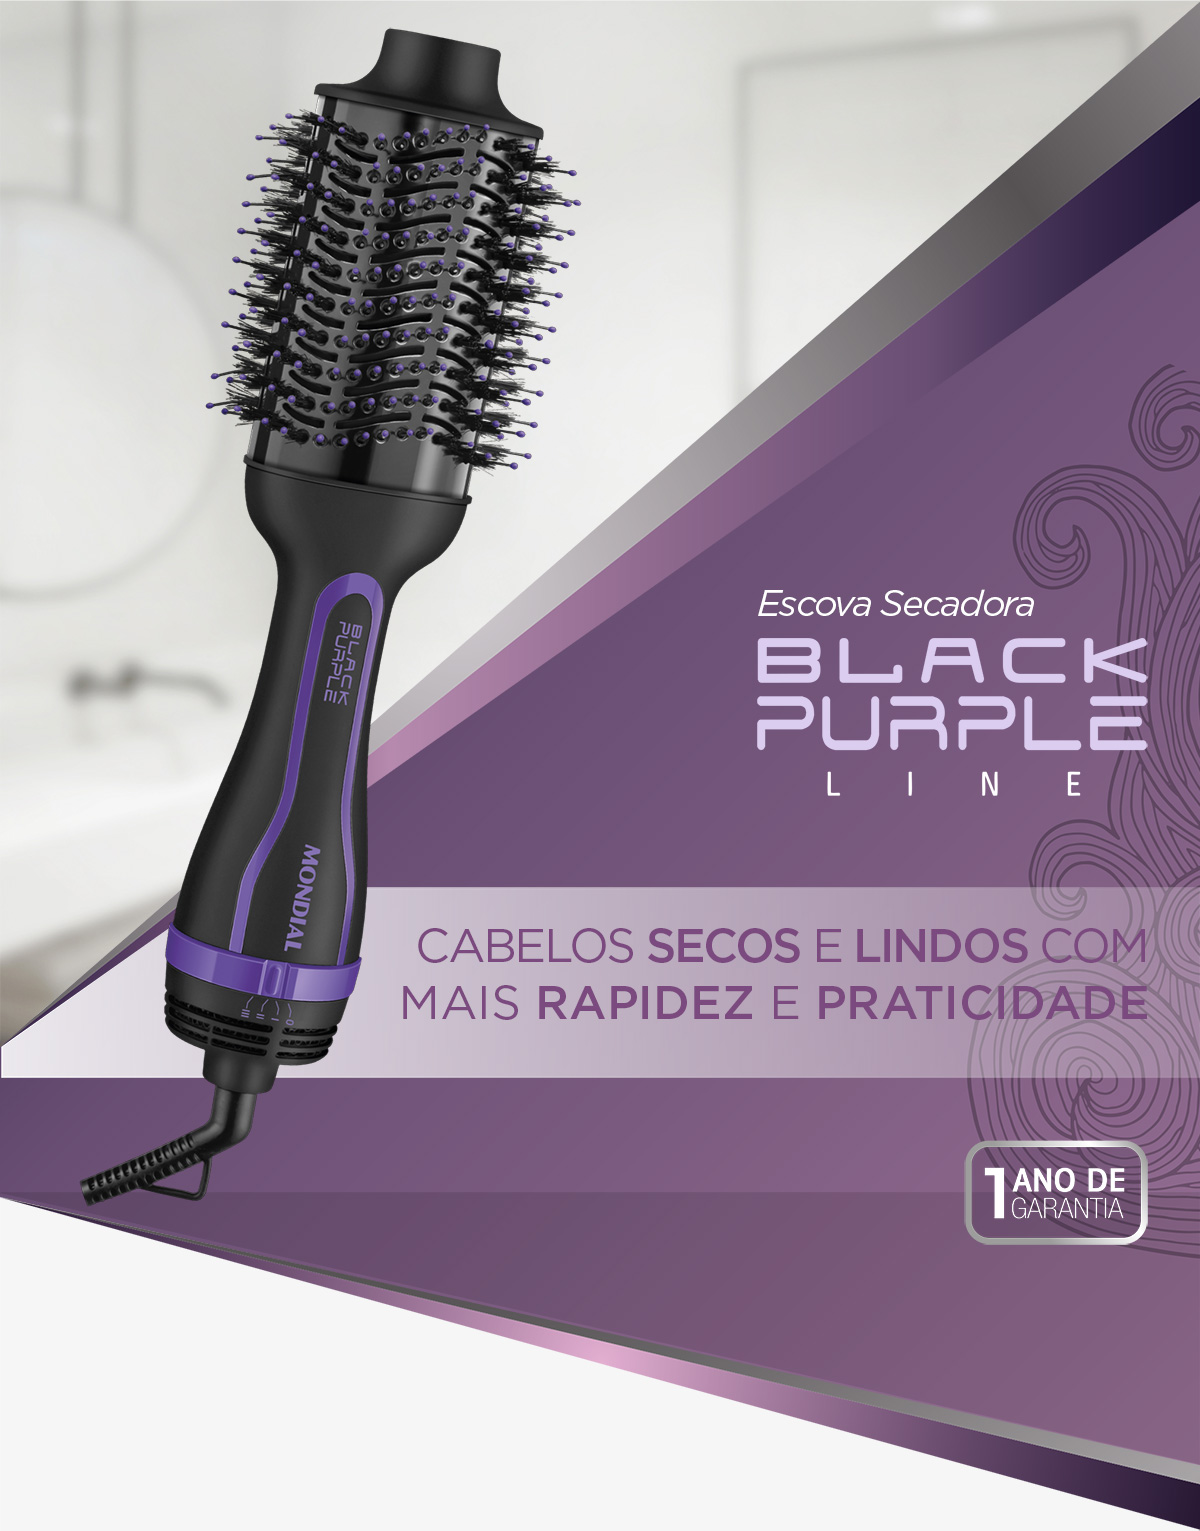 Escova Secadora Black Purple Line. Cabelos secos e lindos com mais rapidez e praticidade. 1 Ano de garantia.